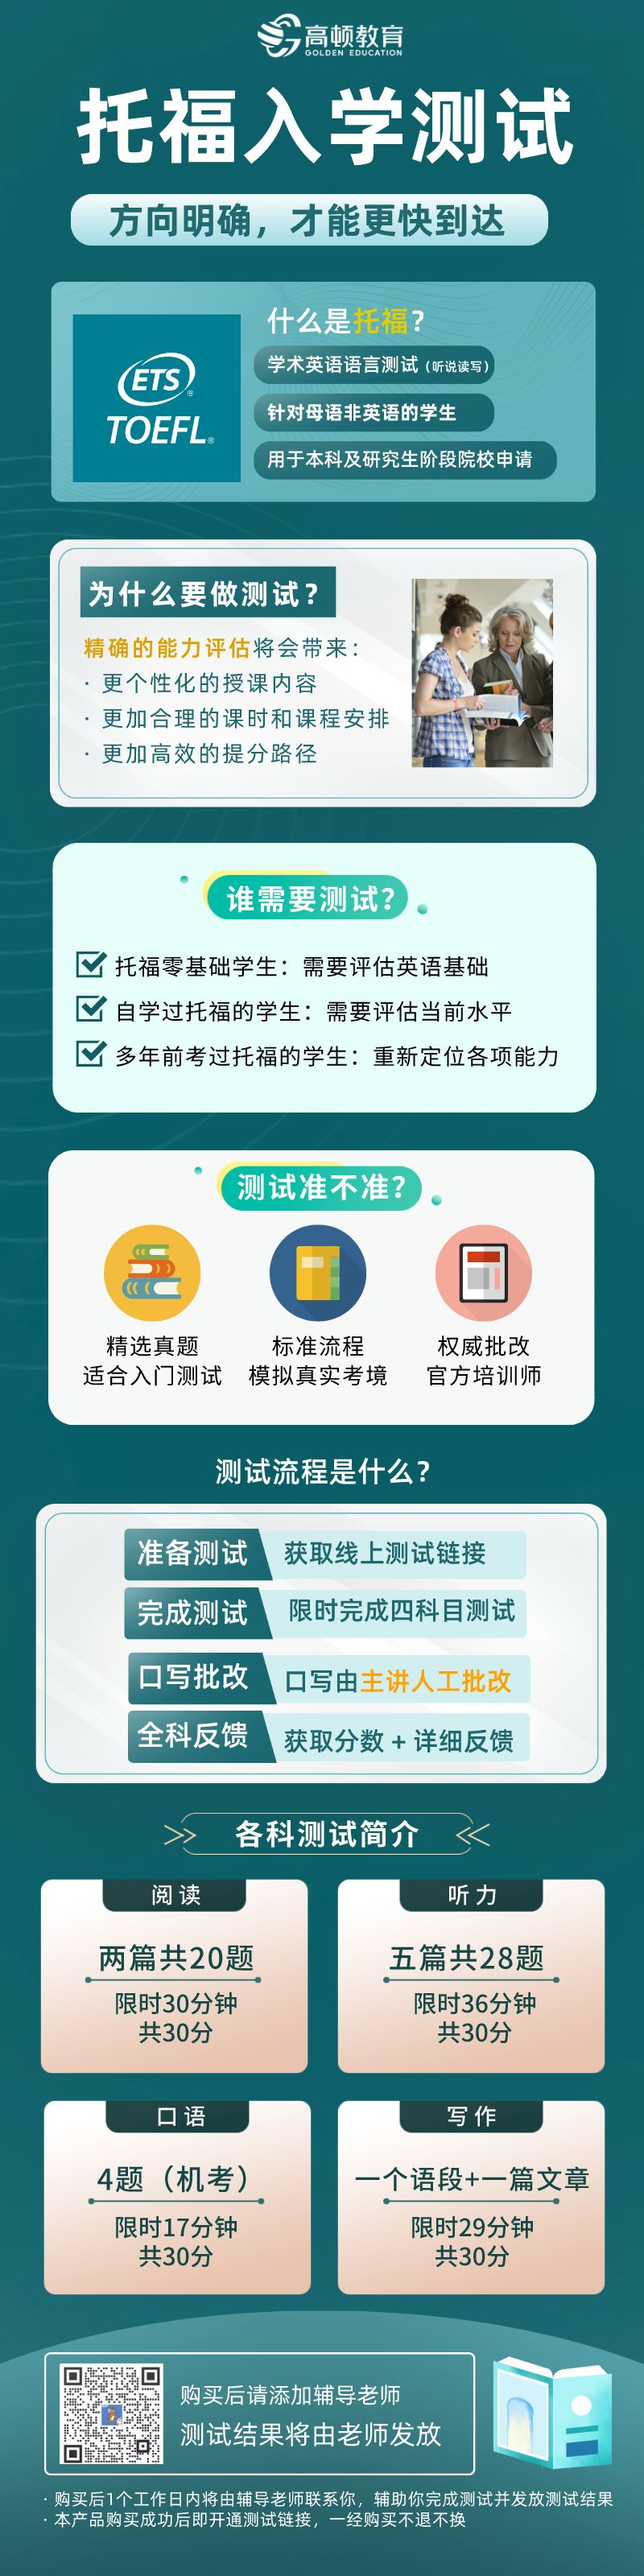 https://simg01.gaodunwangxiao.com/uploadfiles/product-center/202306/25/1e0b3_20230625155414.png